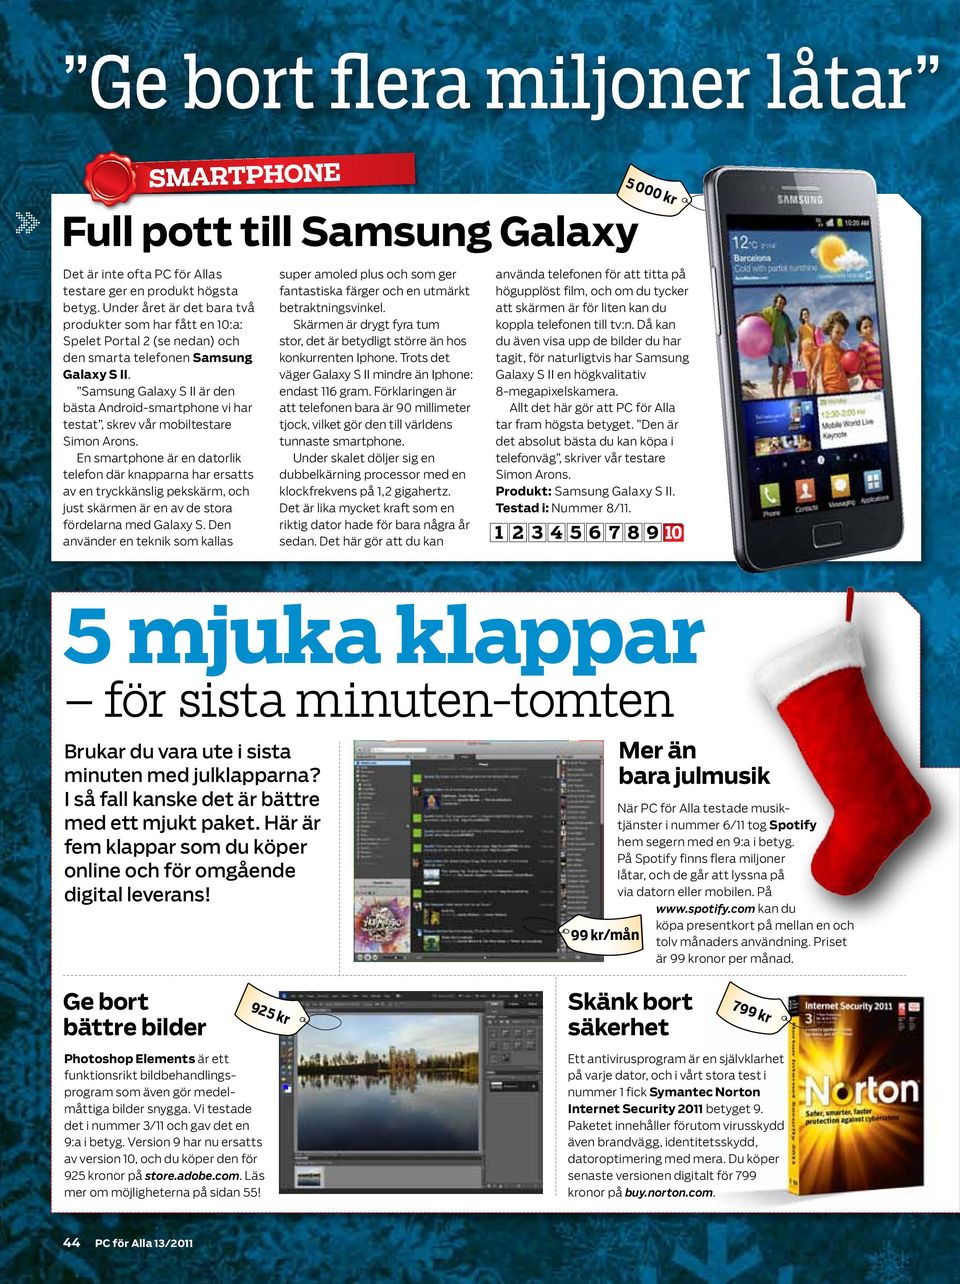 Samsung Galaxy S II är den bästa Android-smartphone vi har testat, skrev vår mobiltestare Simon Arons.